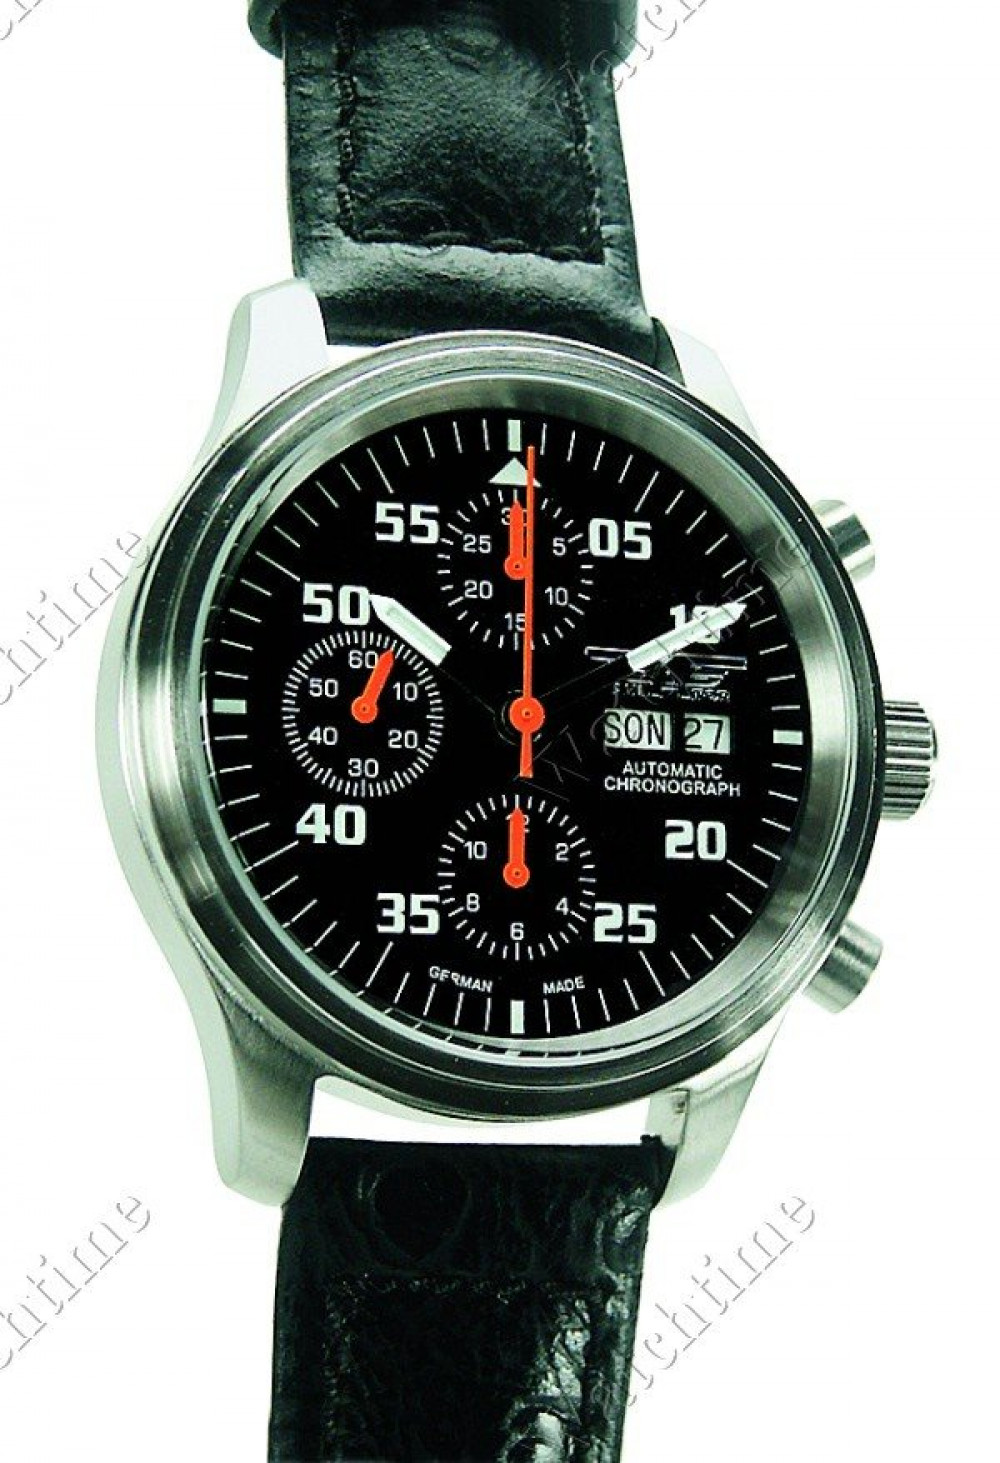 Zegarek firmy Aviator (Germany), model Automatik Chronograph